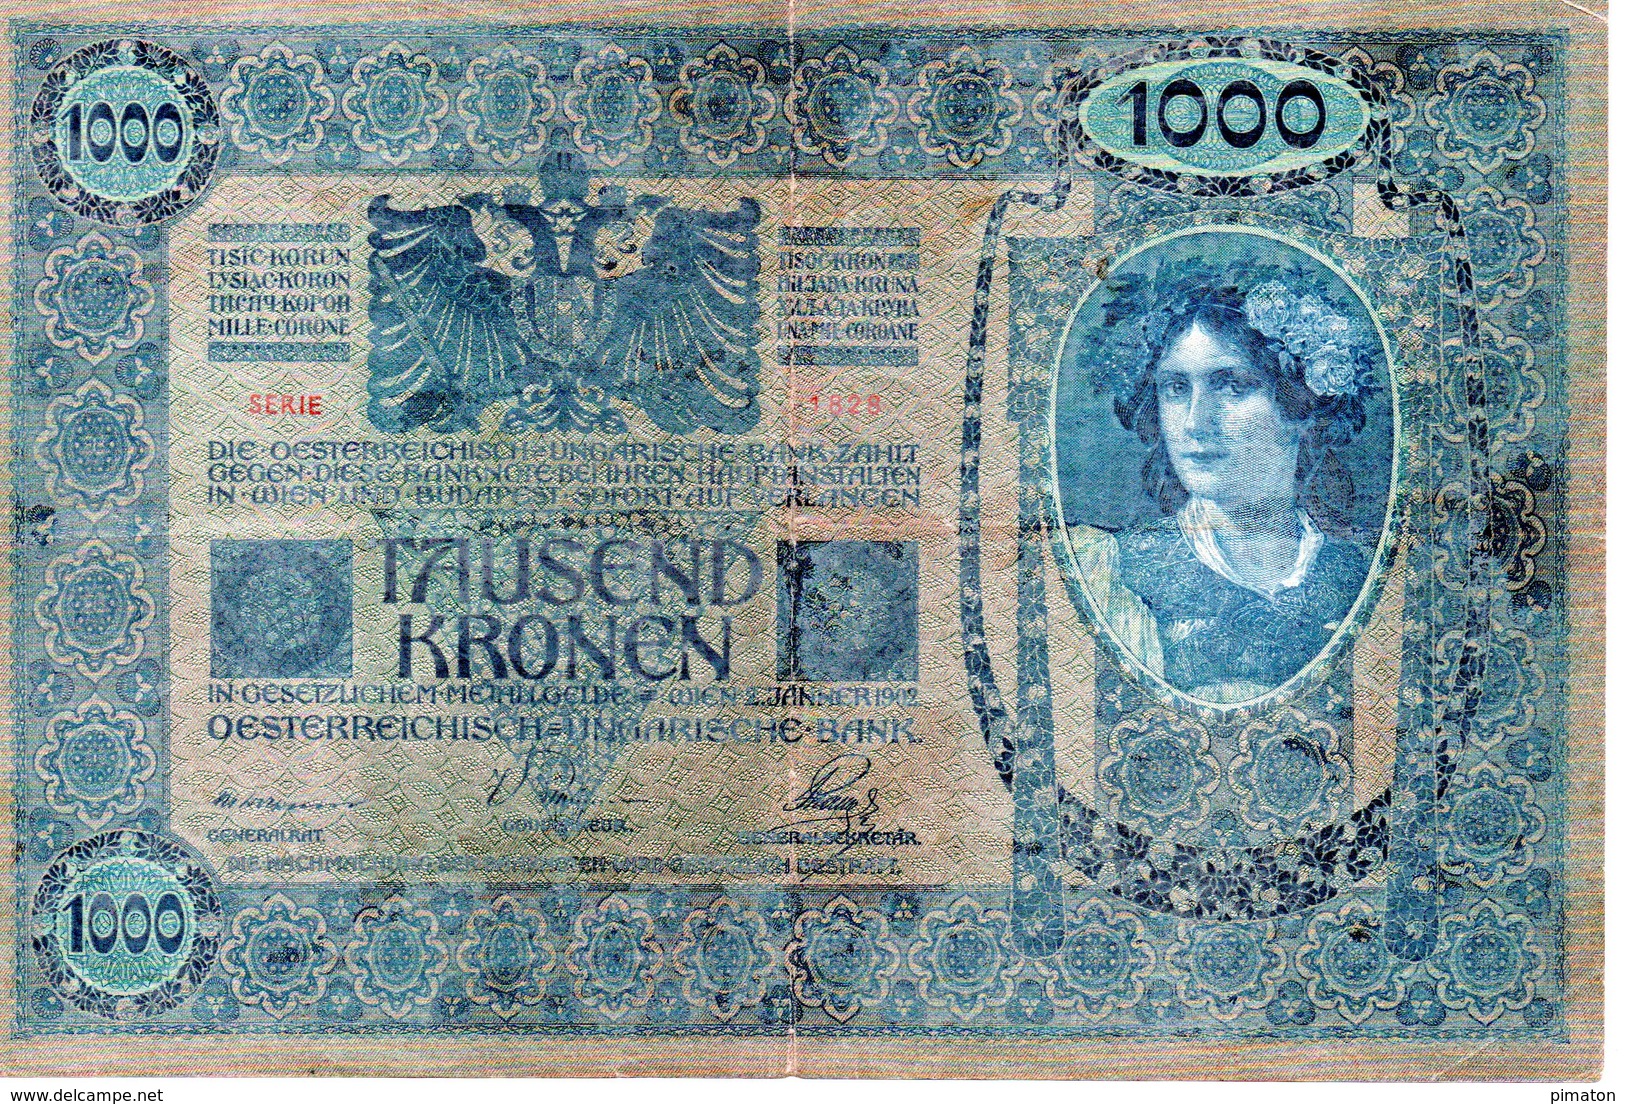 TAUSEND  KRONEN  WIEN 2 JANNER 1902   Oesterreichisch - Ungarische Bank - Other - Europe